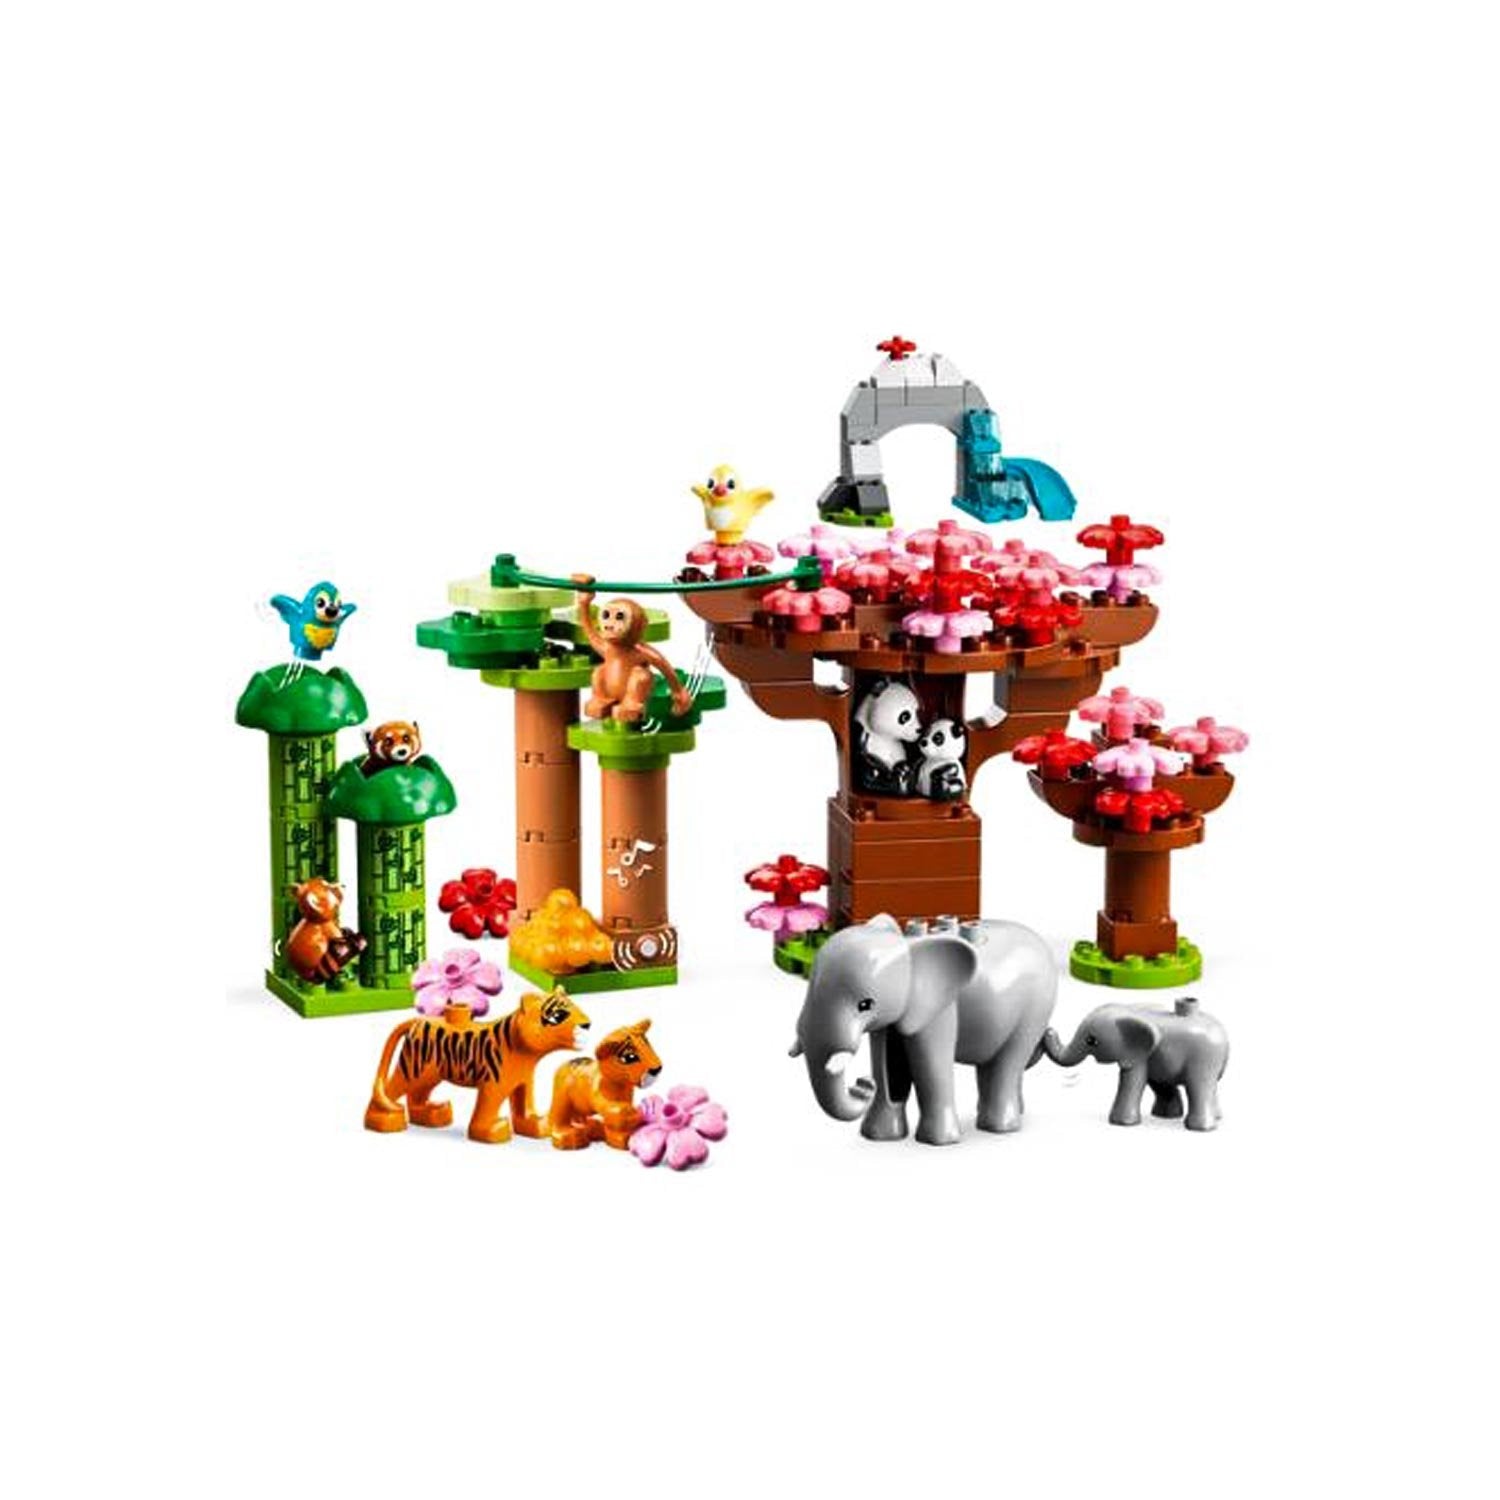 LEGO DUPLO Wild Animals of Asia set 2